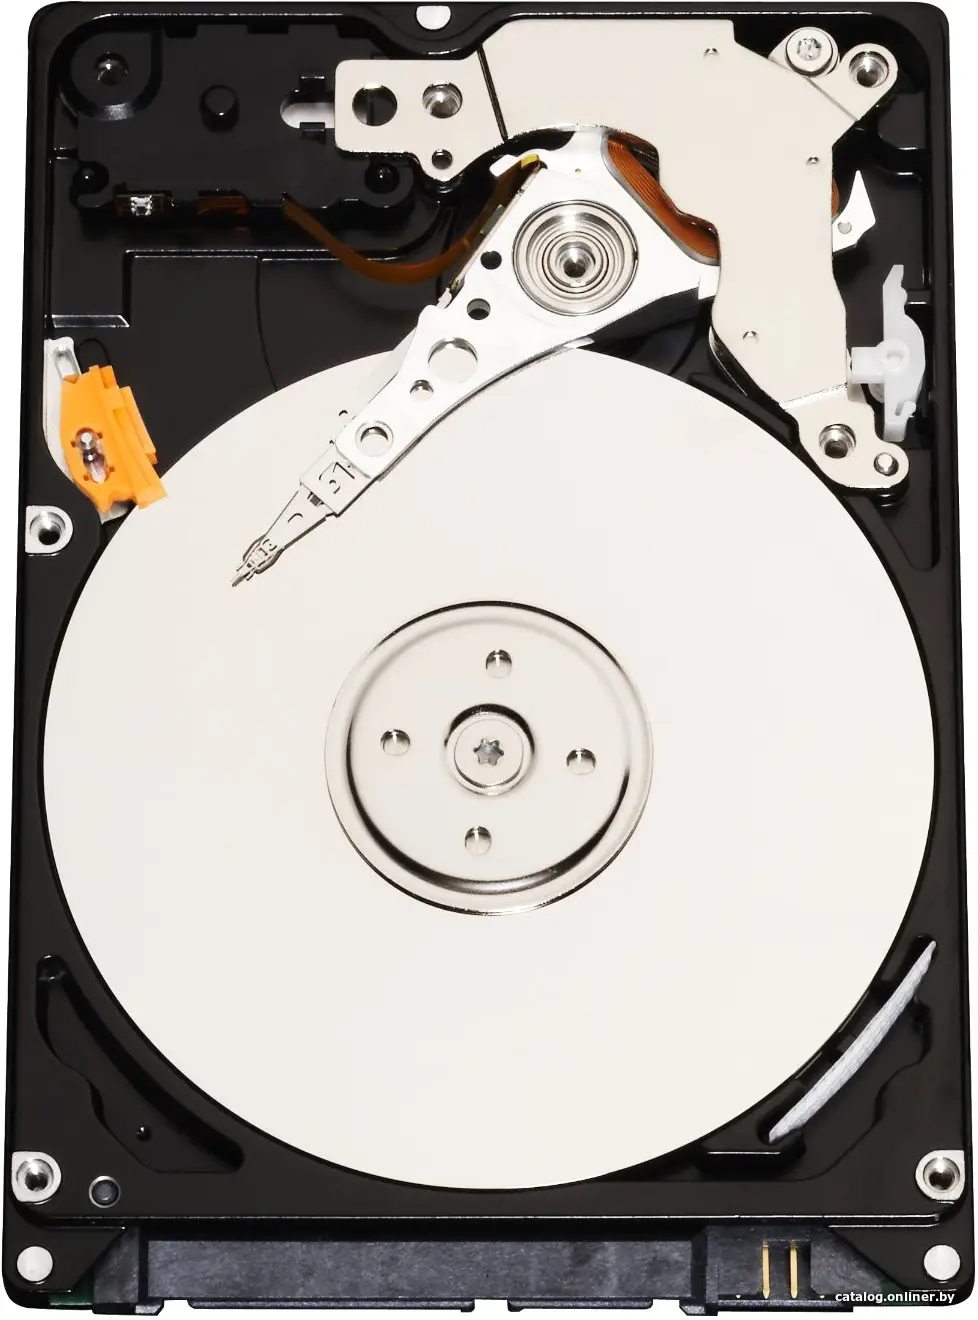 Купить Жесткий диск Infortrend HELT72S3T10-0030G, цена, опт и розница